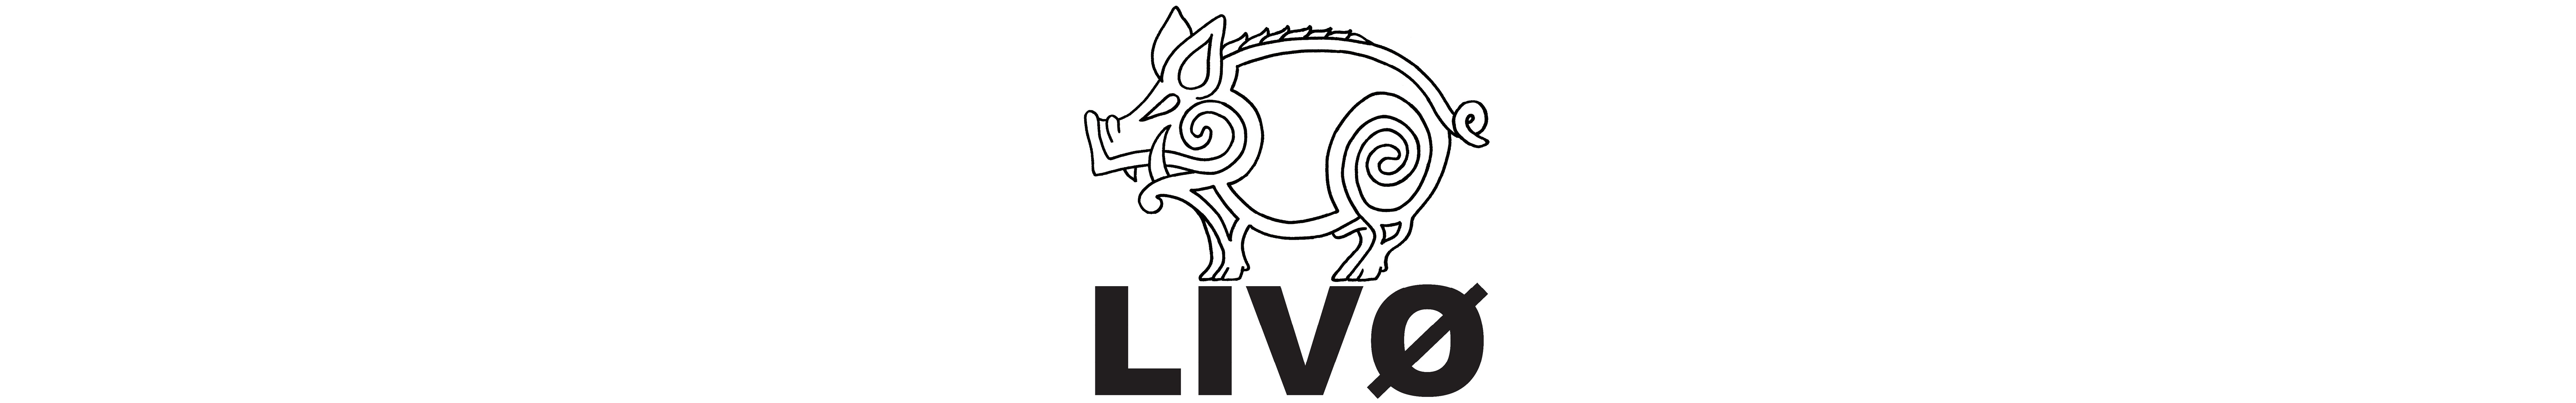 Livø Logo